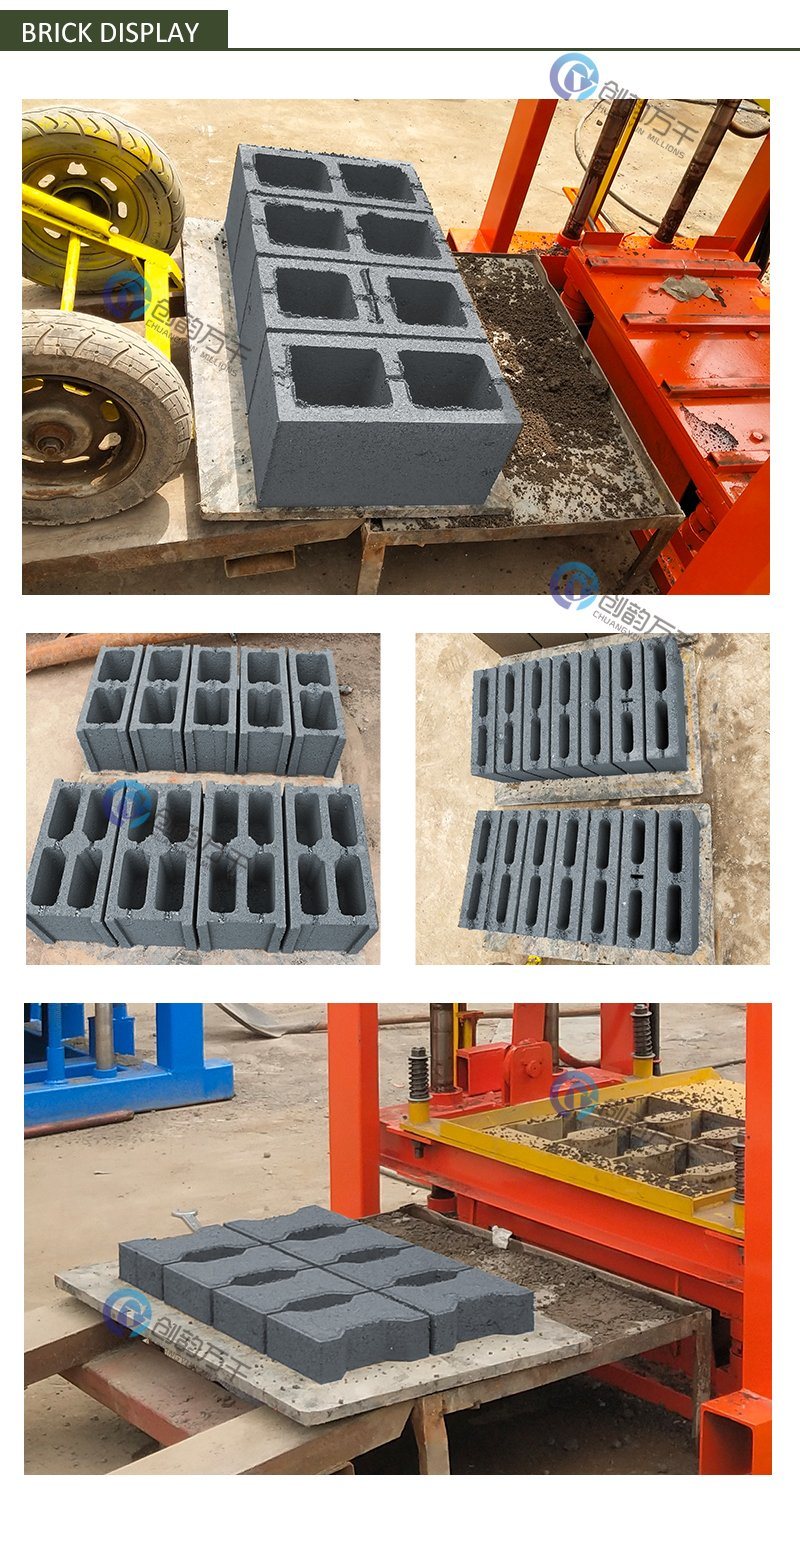 Manual Brick Making Machine Qt4-40 Concrete Block Making Machine